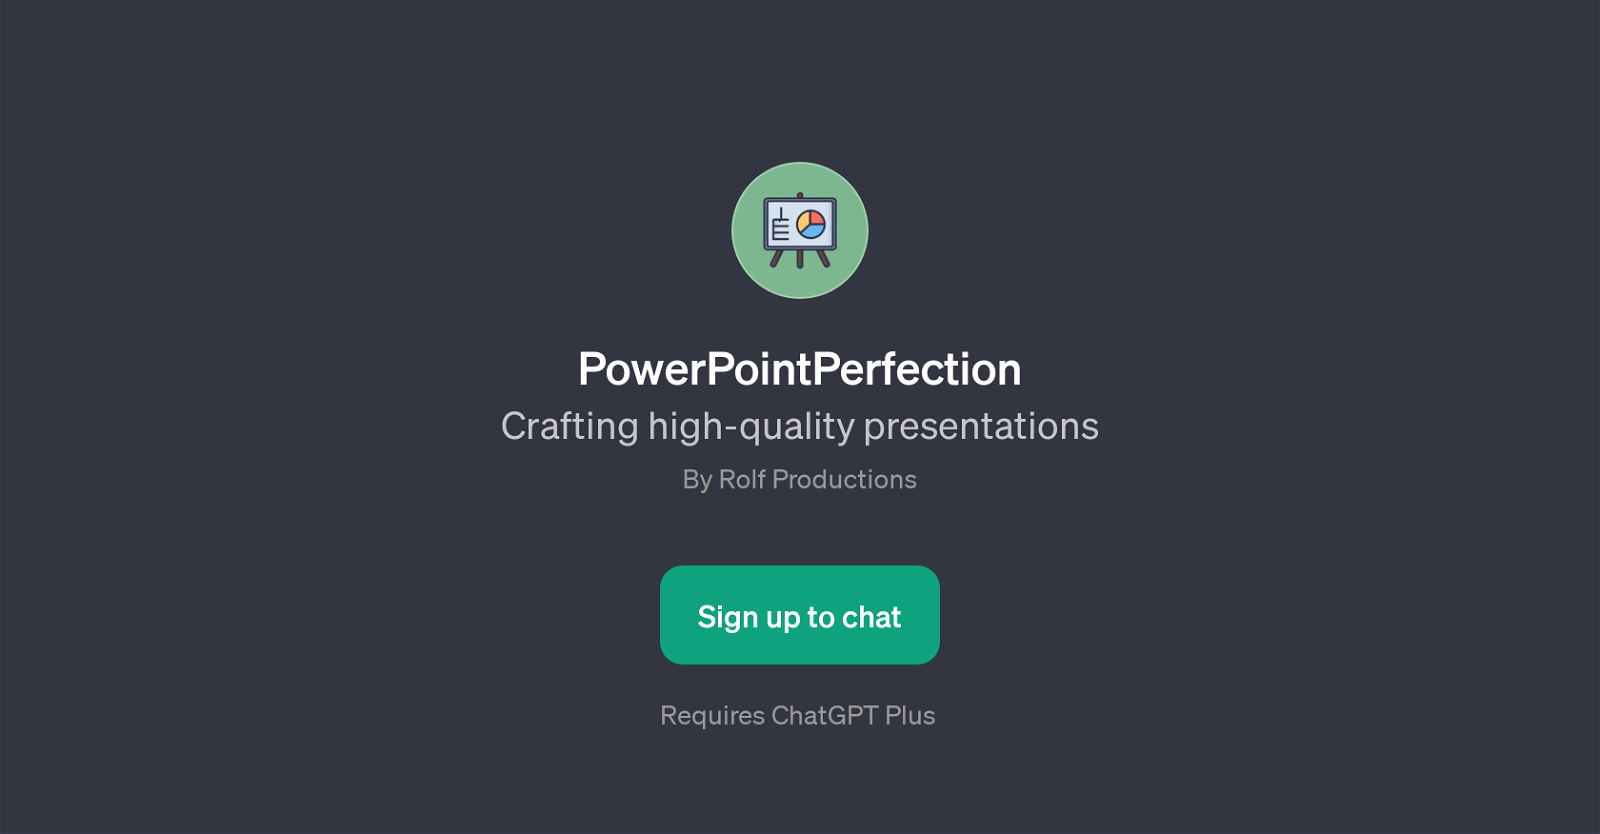 PowerPointPerfection website